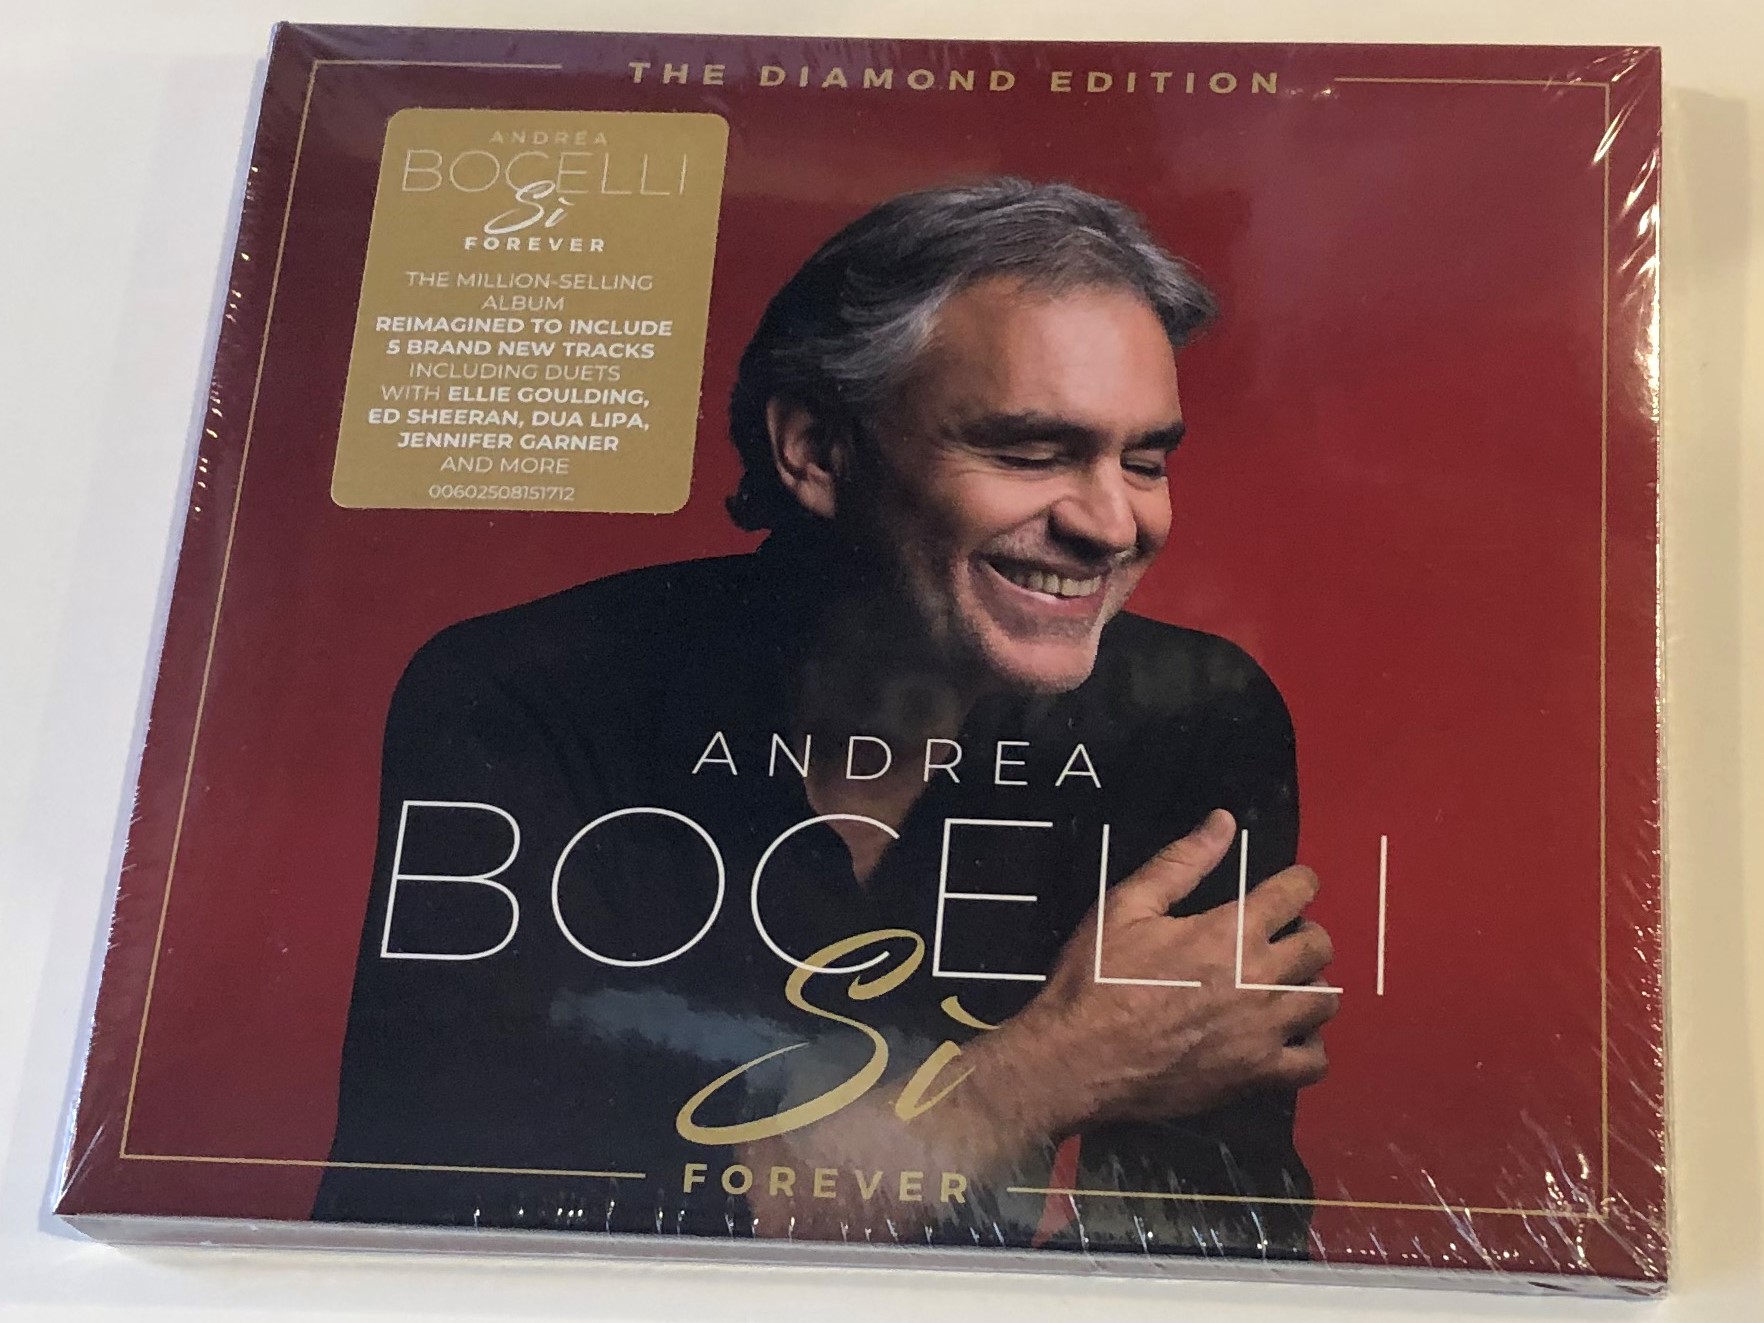 the-diamond-edition-andrea-bocelli-si-forever-sugar-audio-cd-2019-602508151712-1-.jpg